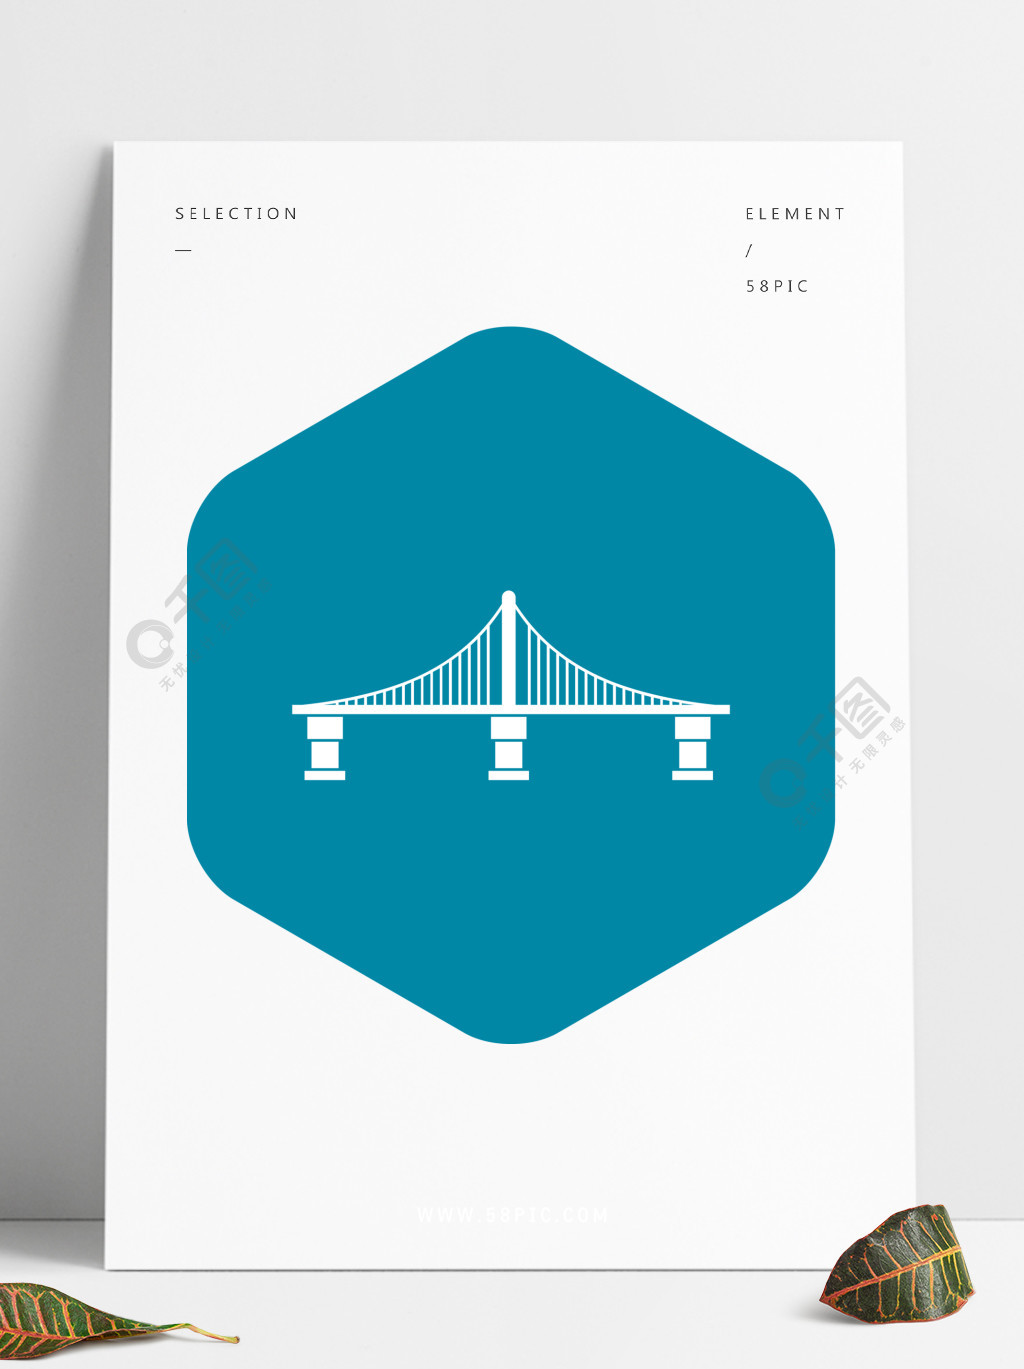 桥梁在白色背景上孤立的简单风格的图标桥梁图标,简约风格